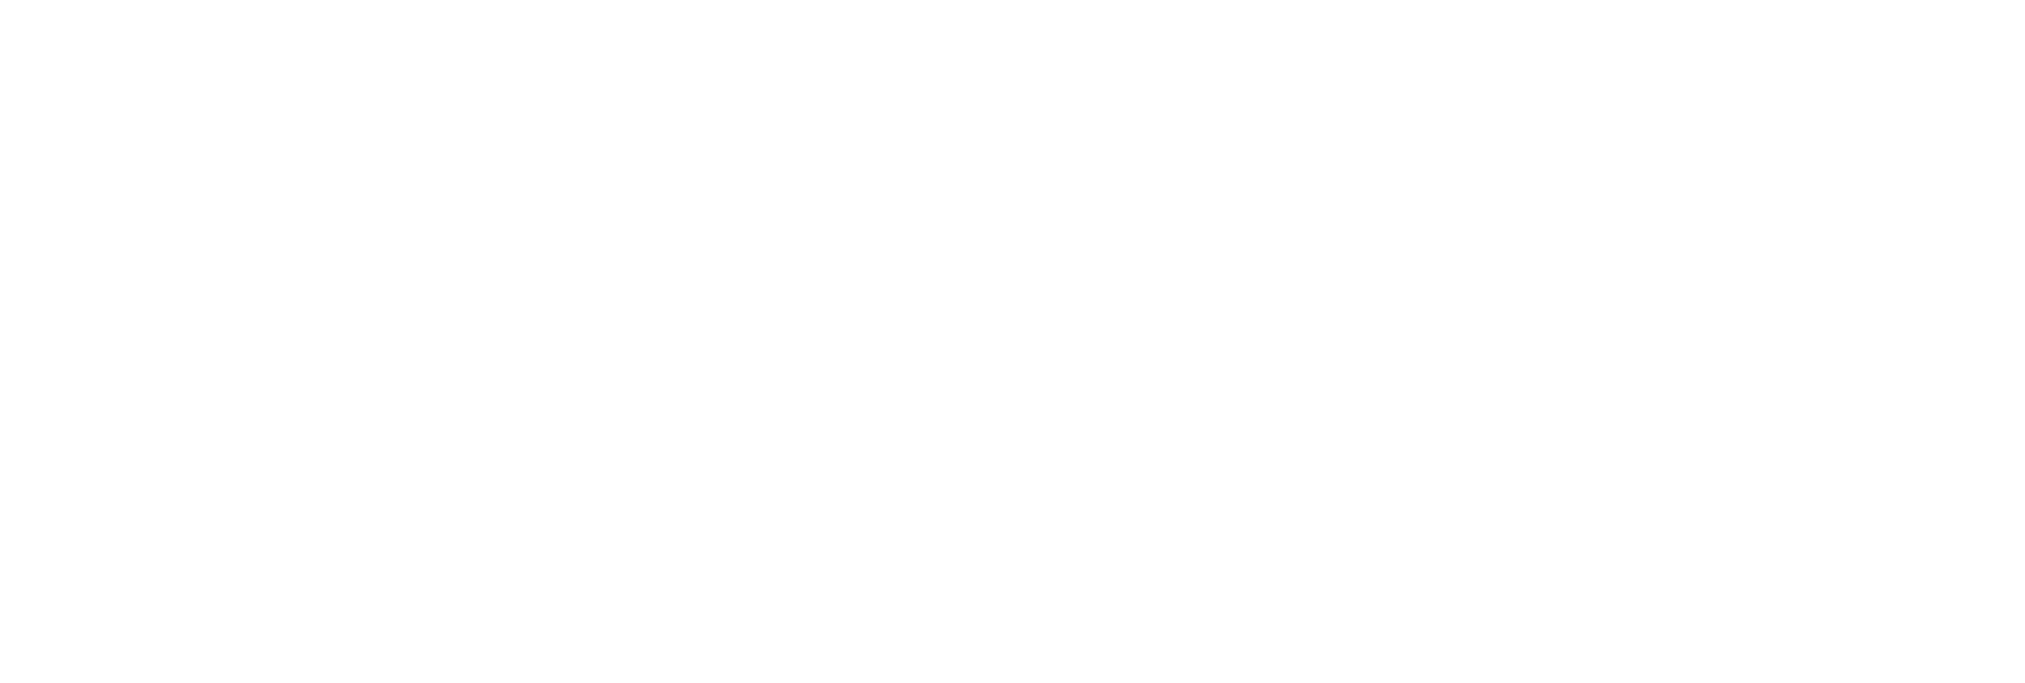 white logo watermark of tsri